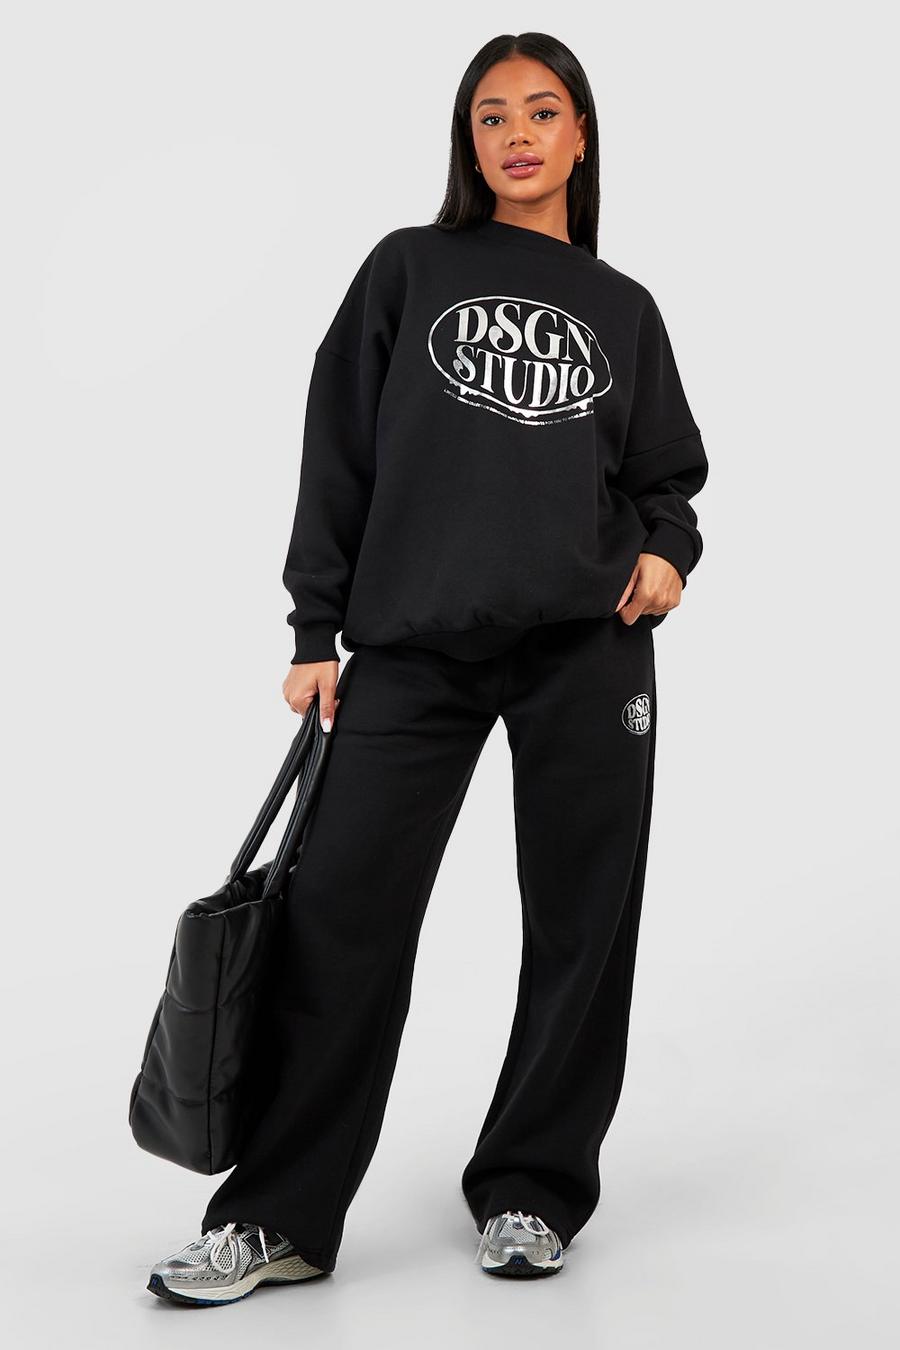 Oversize Sweatshirt mit Dsgn Studio Folien-Print, Black